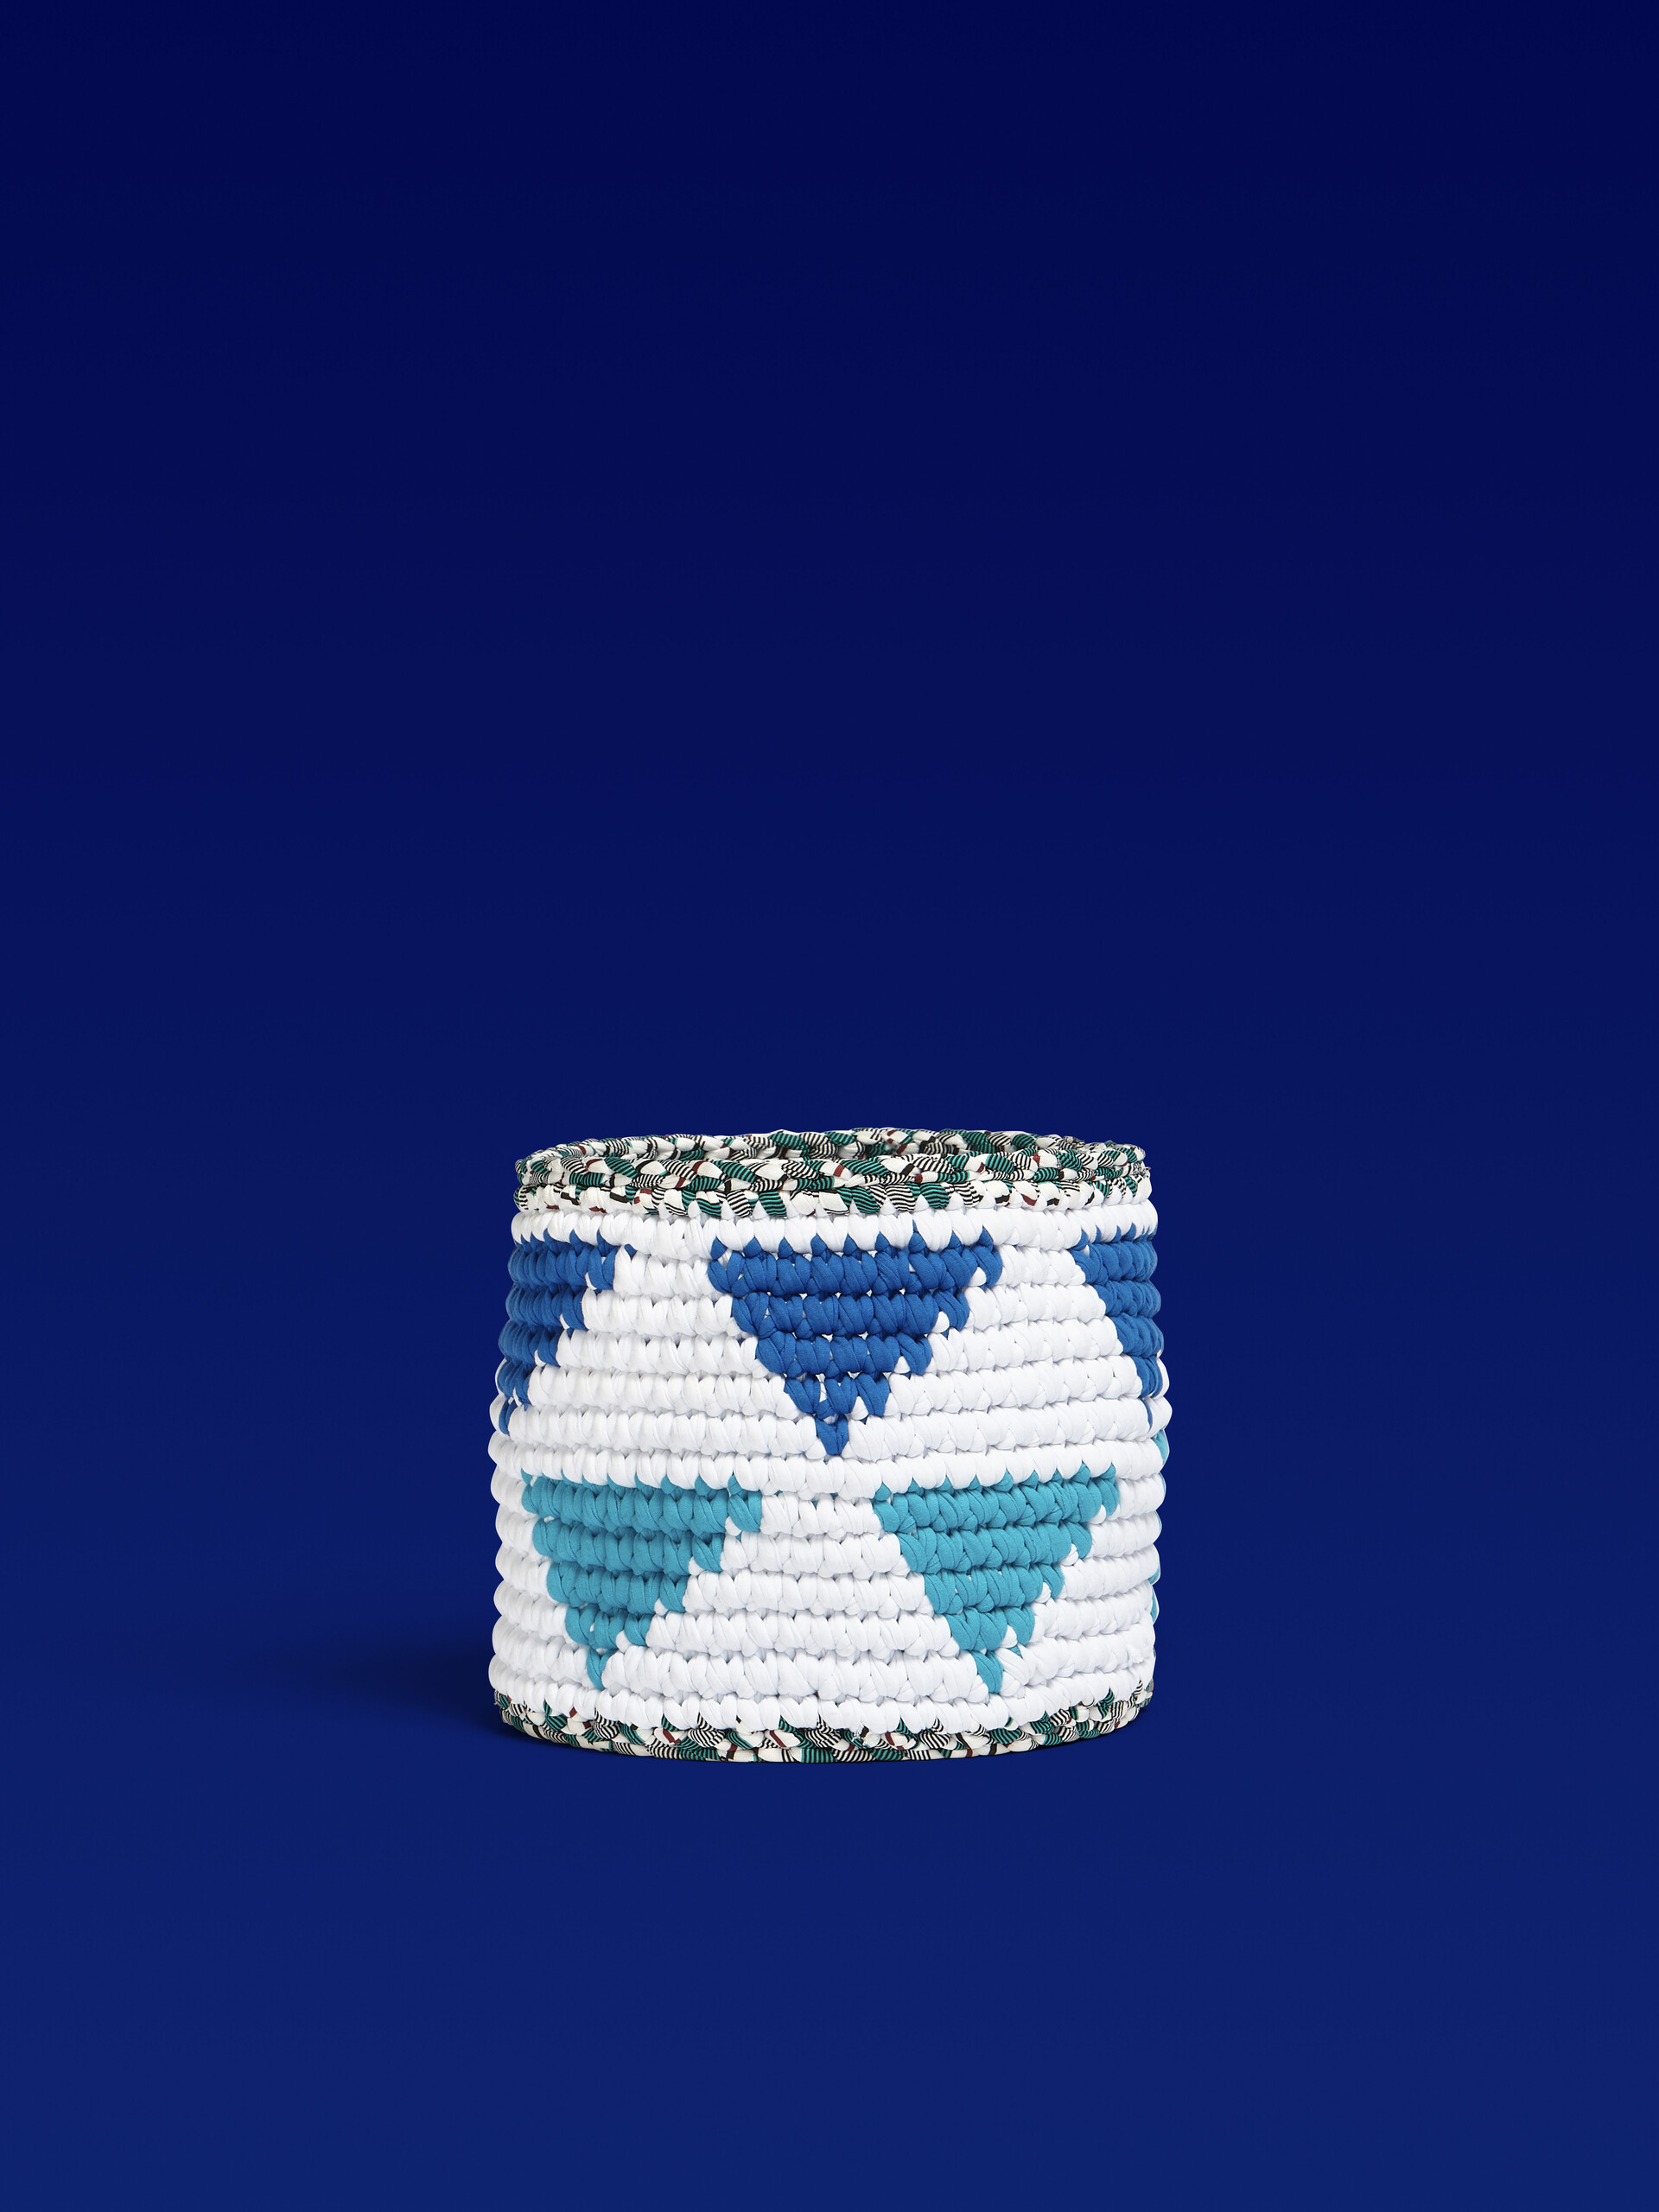 Cache-pot MARNI MARKET blanc et bleu de taille moyenne, réalisé au crochet - Mobilier - Image 1